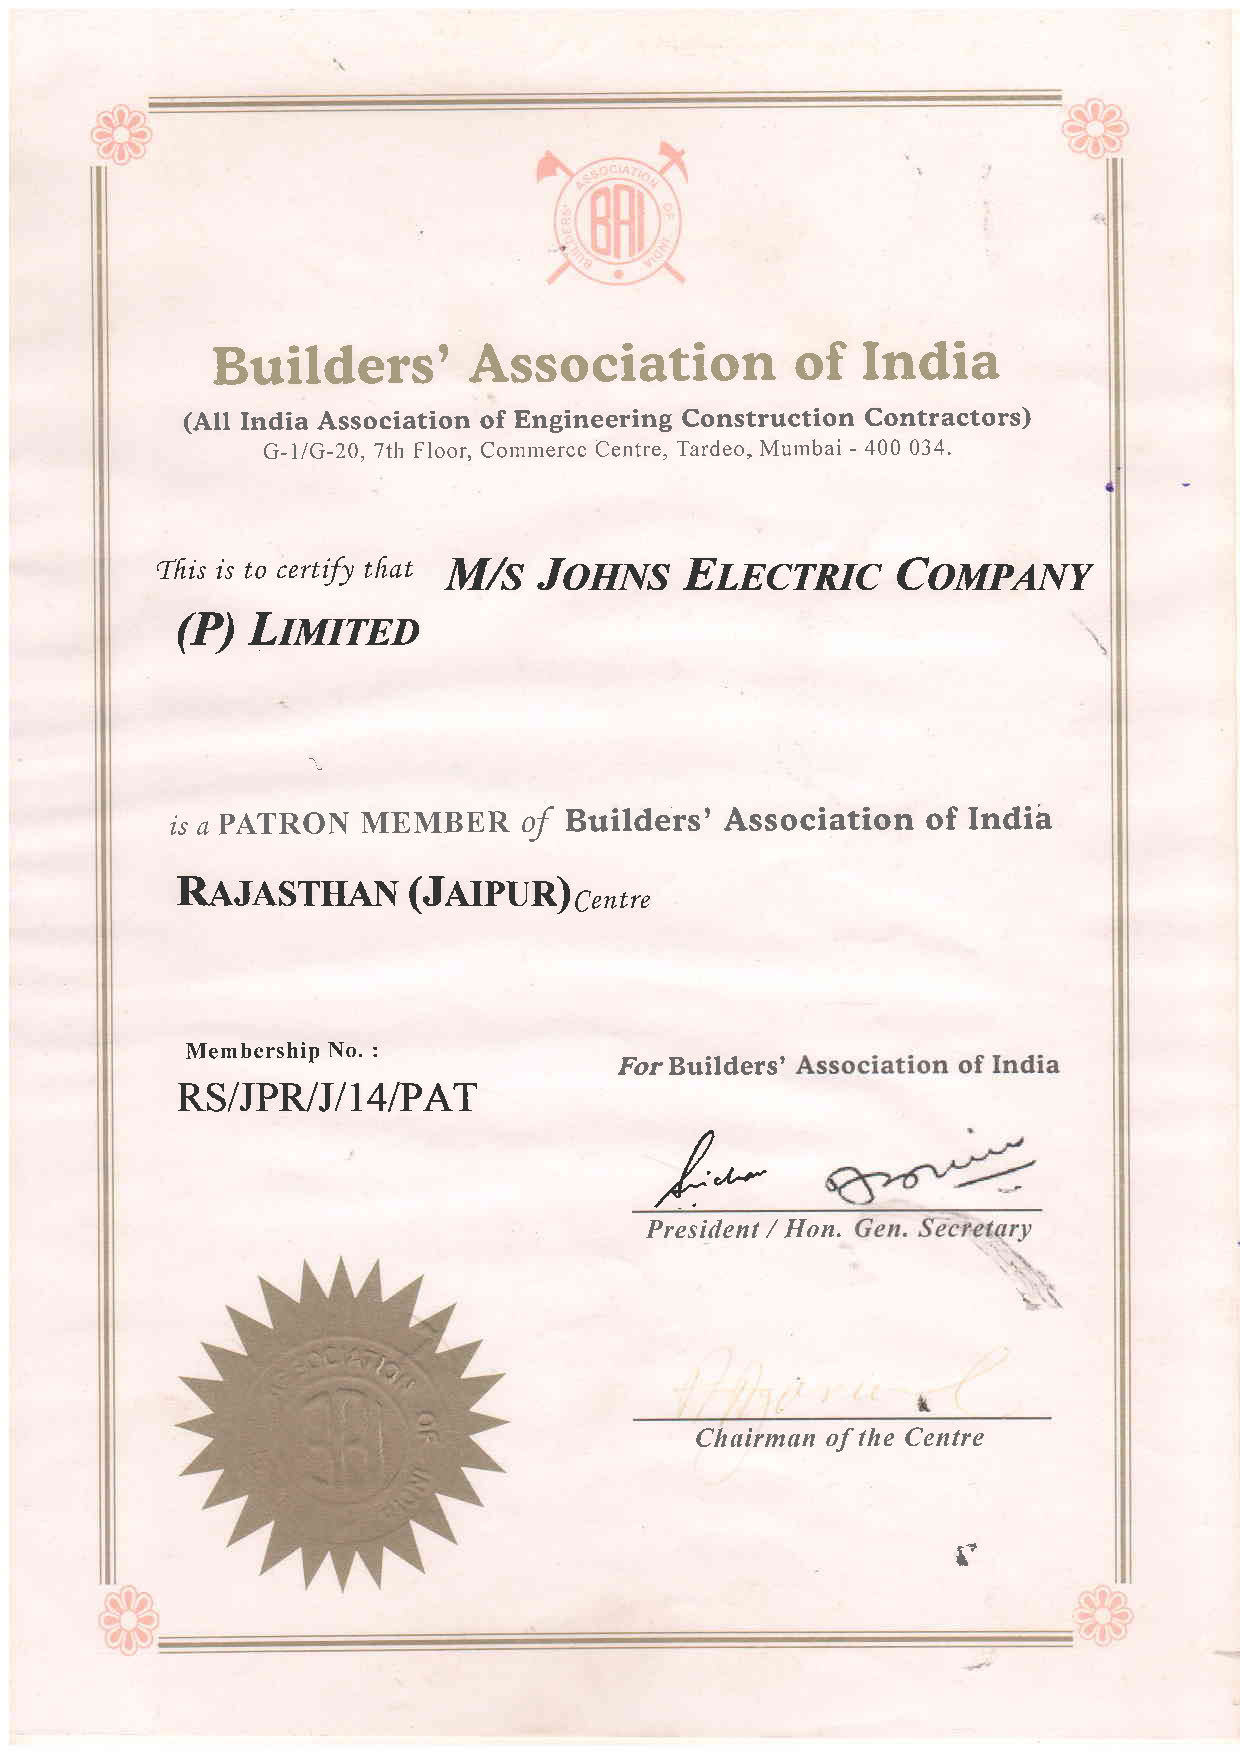 Builders' Association of India Membership Certificate